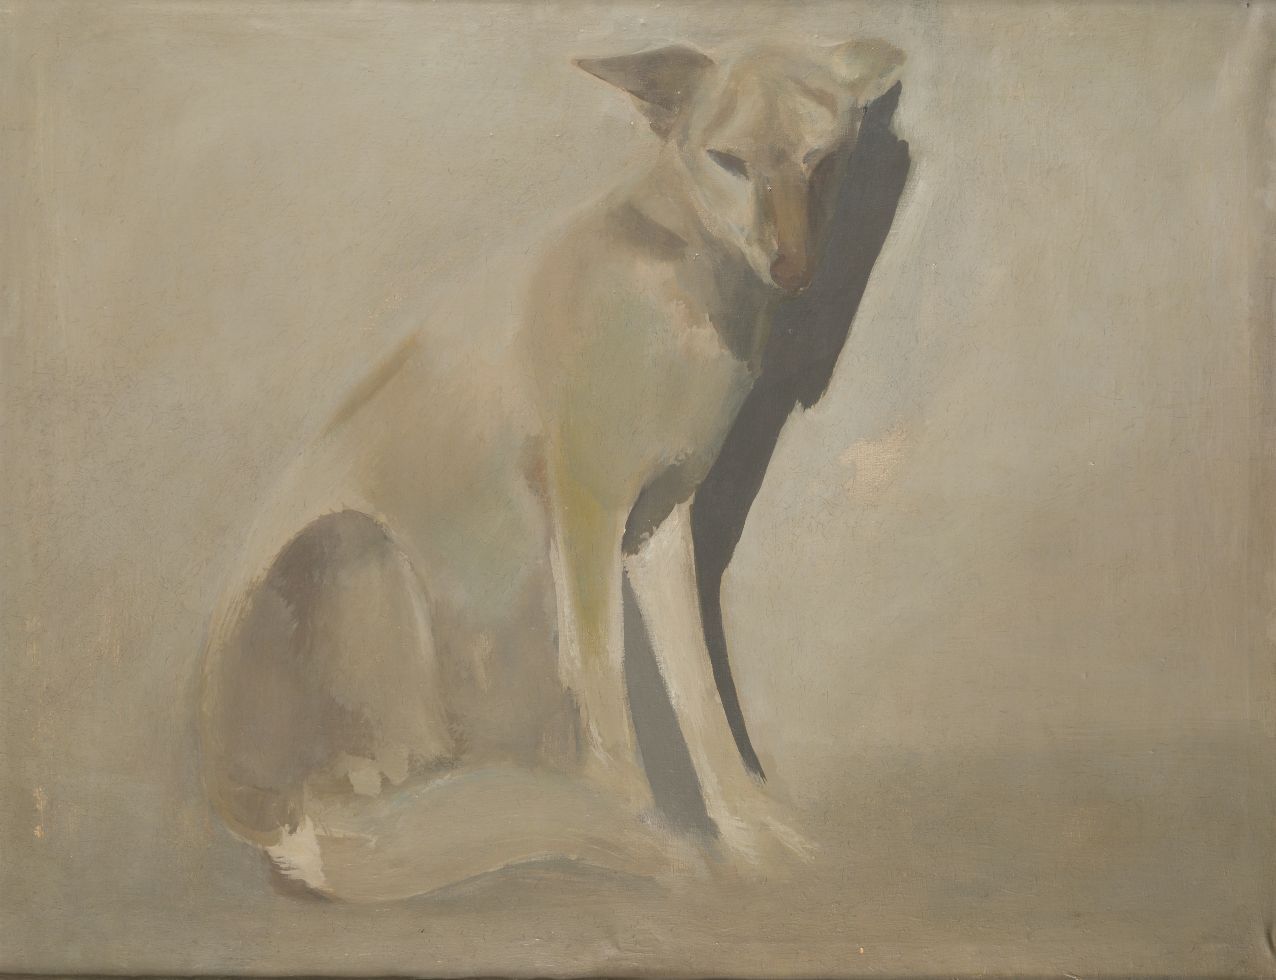 CONSTANTINO GRANDIO (1926 / 1977) "Dog" Óleo sobre lienzo. 90 x 116 cm